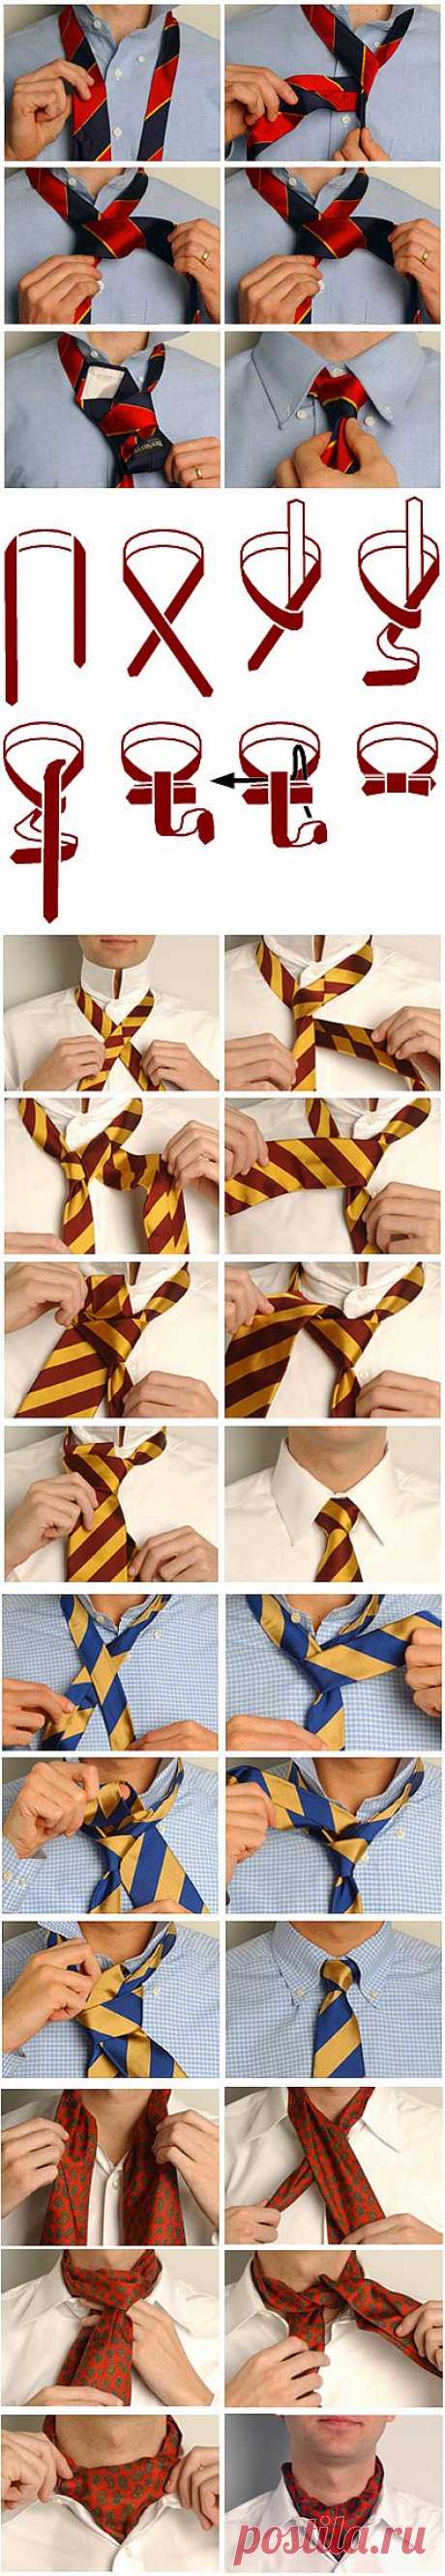 Завязываем галстук. 8 вариантов.